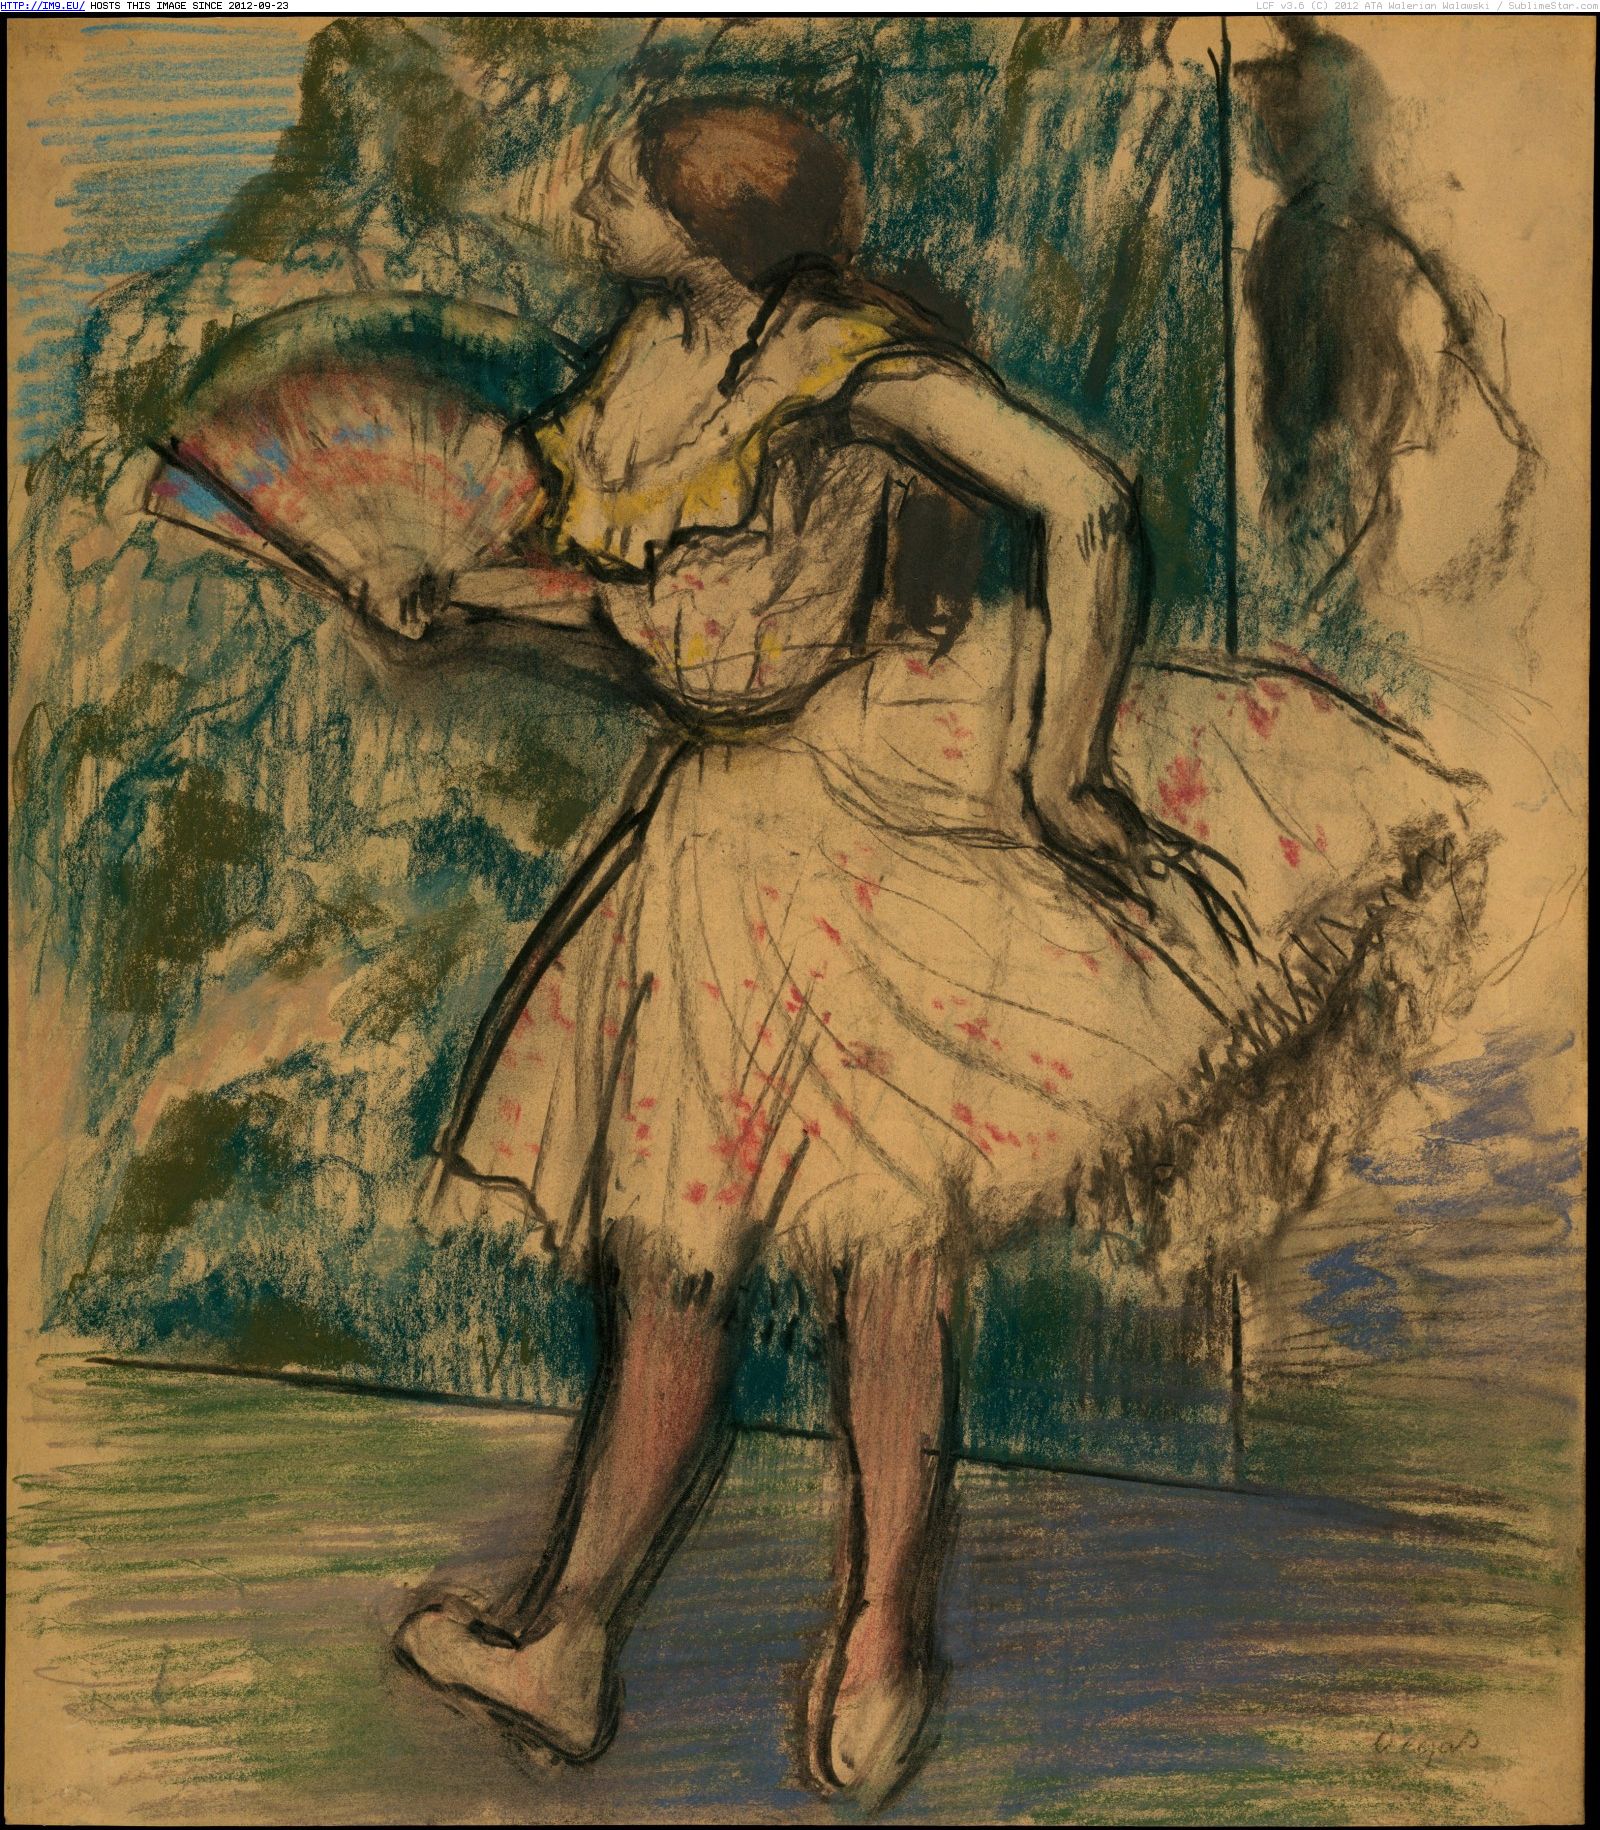 New Skirt Dancer [1896]